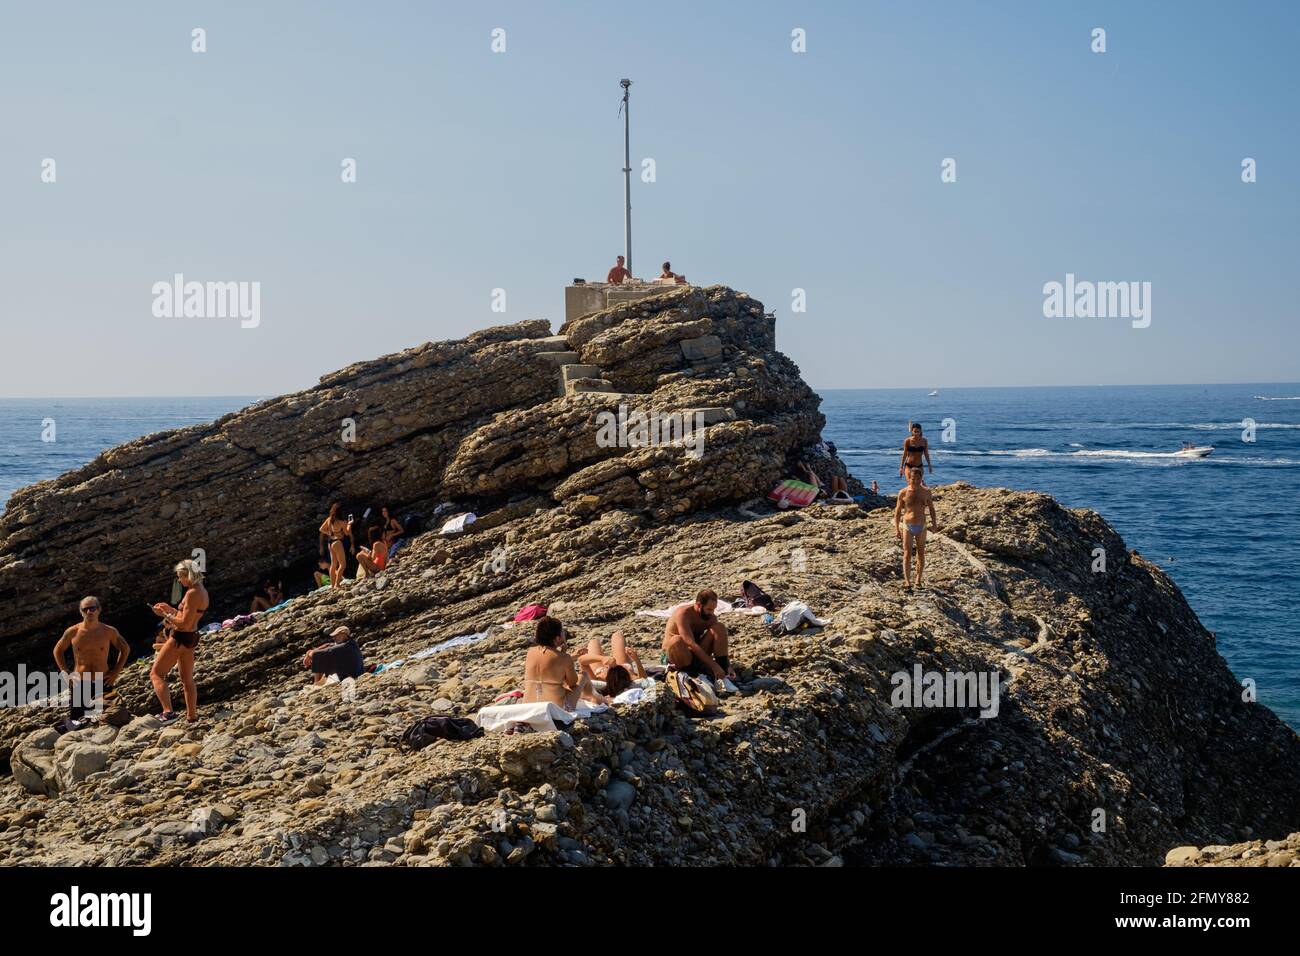 Les gens prennent le soleil sur une plage rocheuse en Ligurie.Cet emplacement unique est Punta Chiappa près de Camogli. Banque D'Images